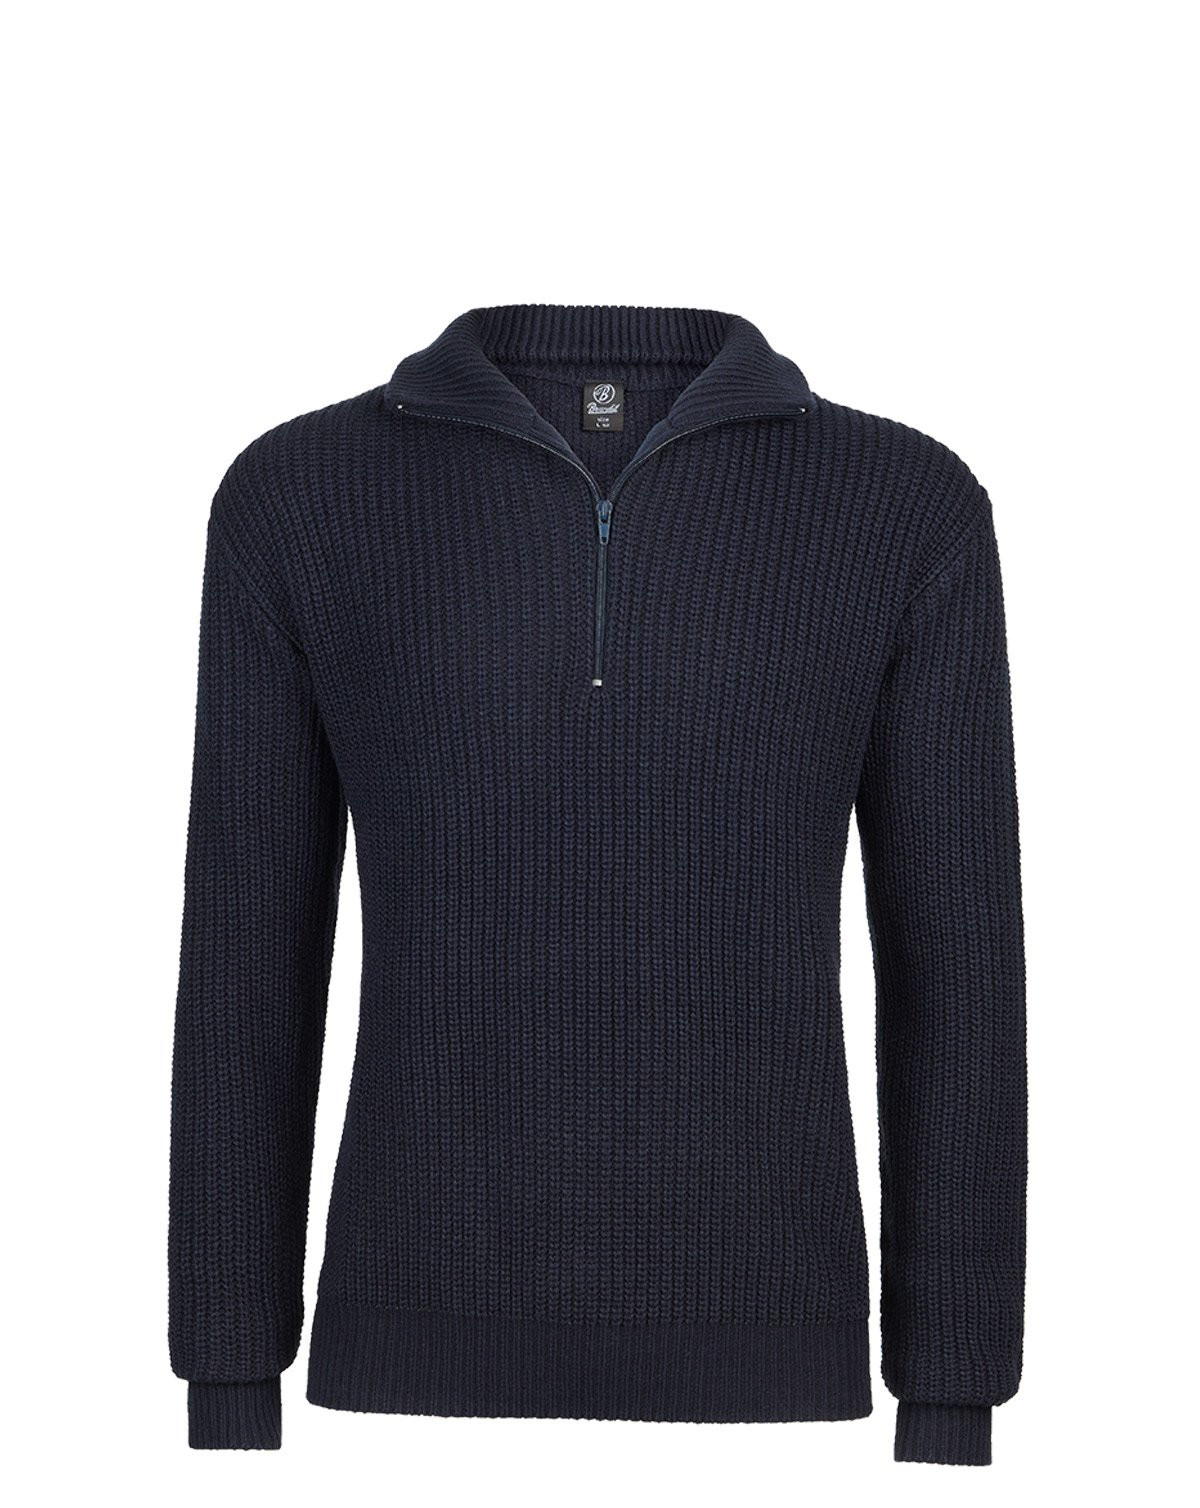 Brandit Marine Pullover Troyer Sweater (Navy, 5XL)